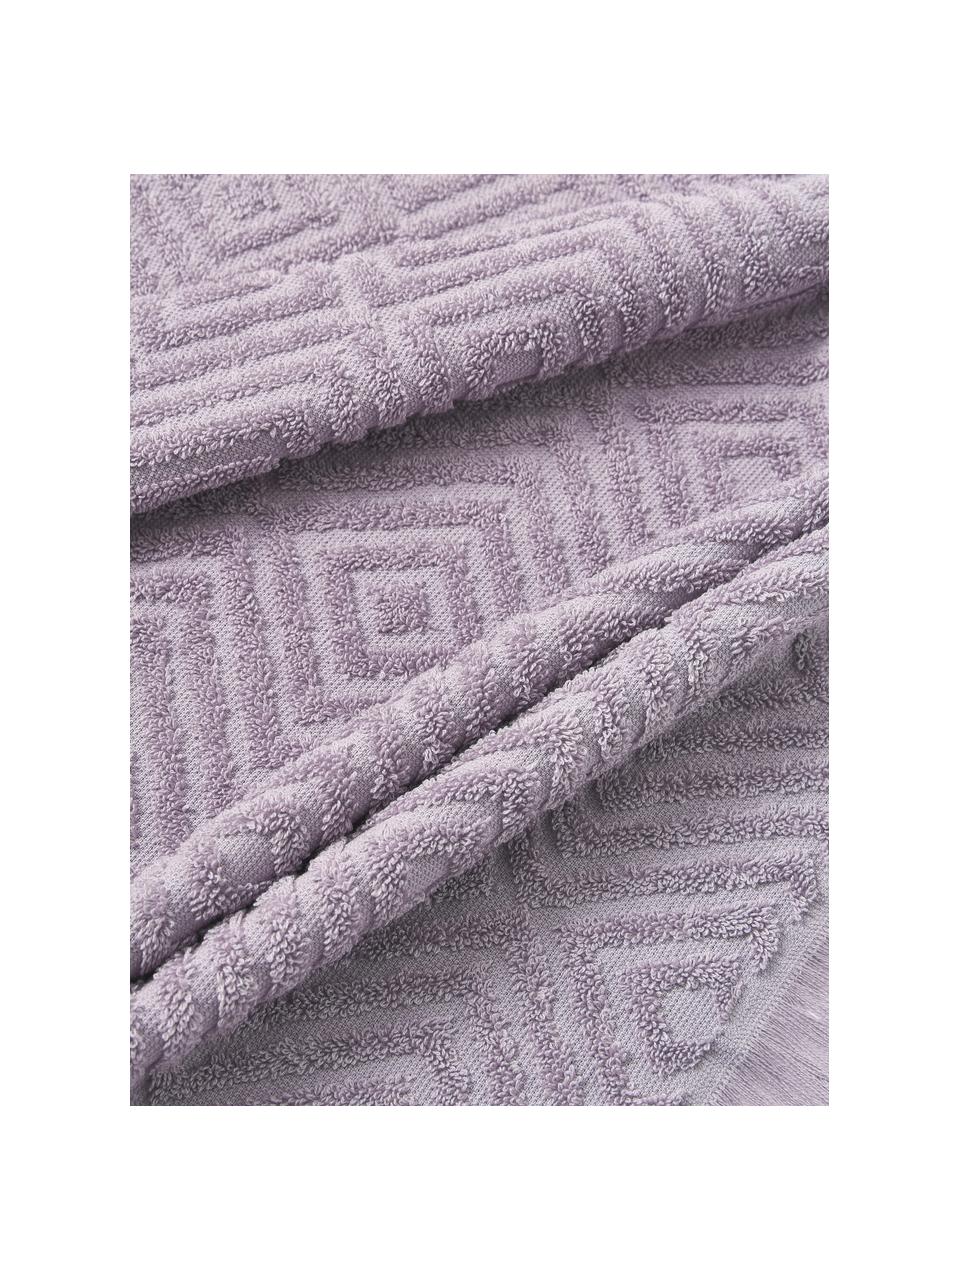 Handtuch-Set Jacqui mit Hoch-Tief-Muster, in verschiedenen Setgrössen, Lavendel, 3er-Set (Gästehandtuch, Handtuch & Duschtuch)